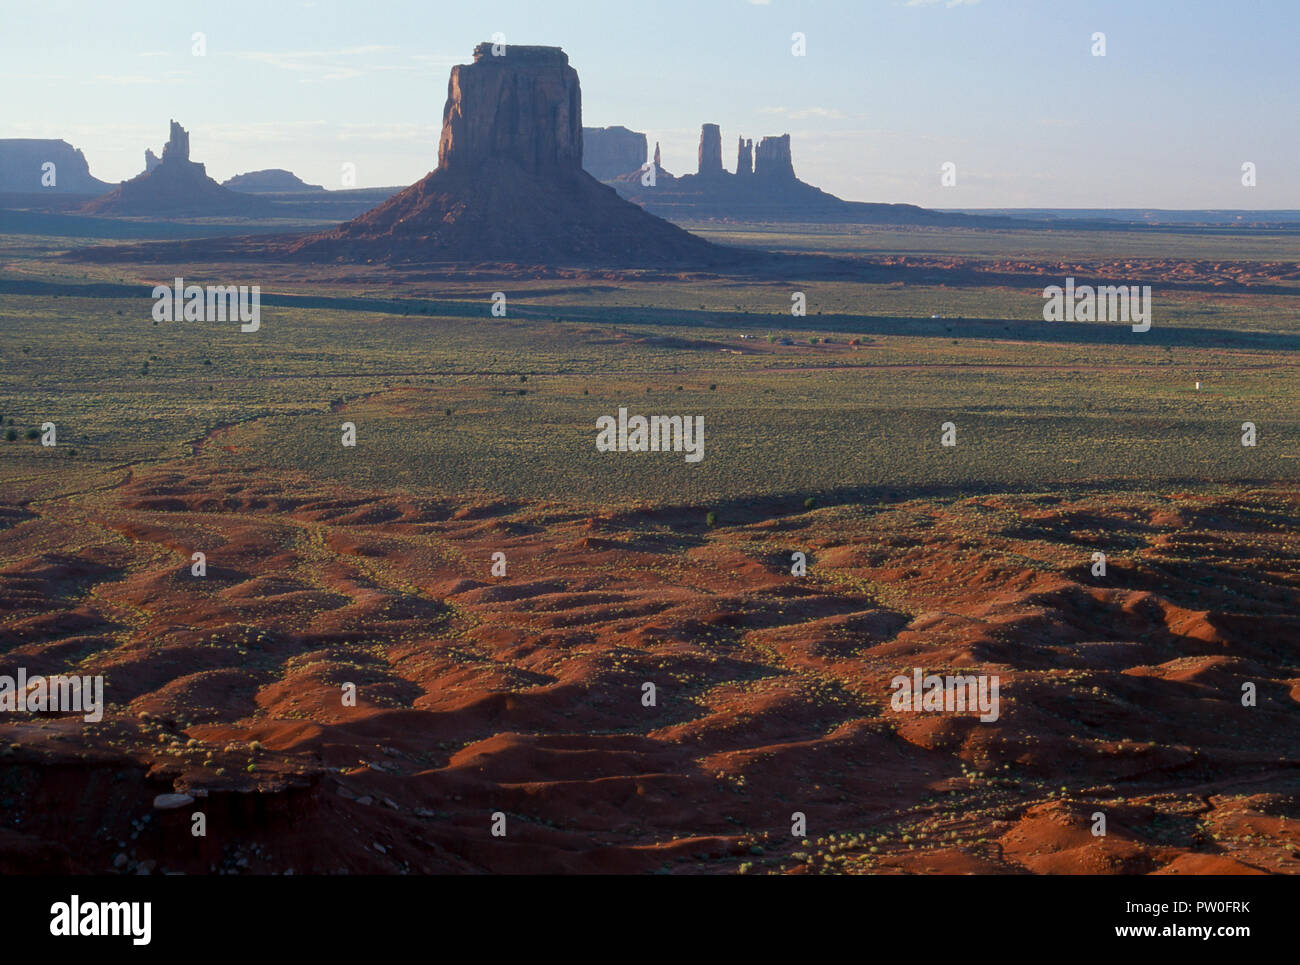 Rote Sandstein Felsformationen in Monument Valley/Navajo Tribal Park, Arizona/Utah. Foto Stockfoto